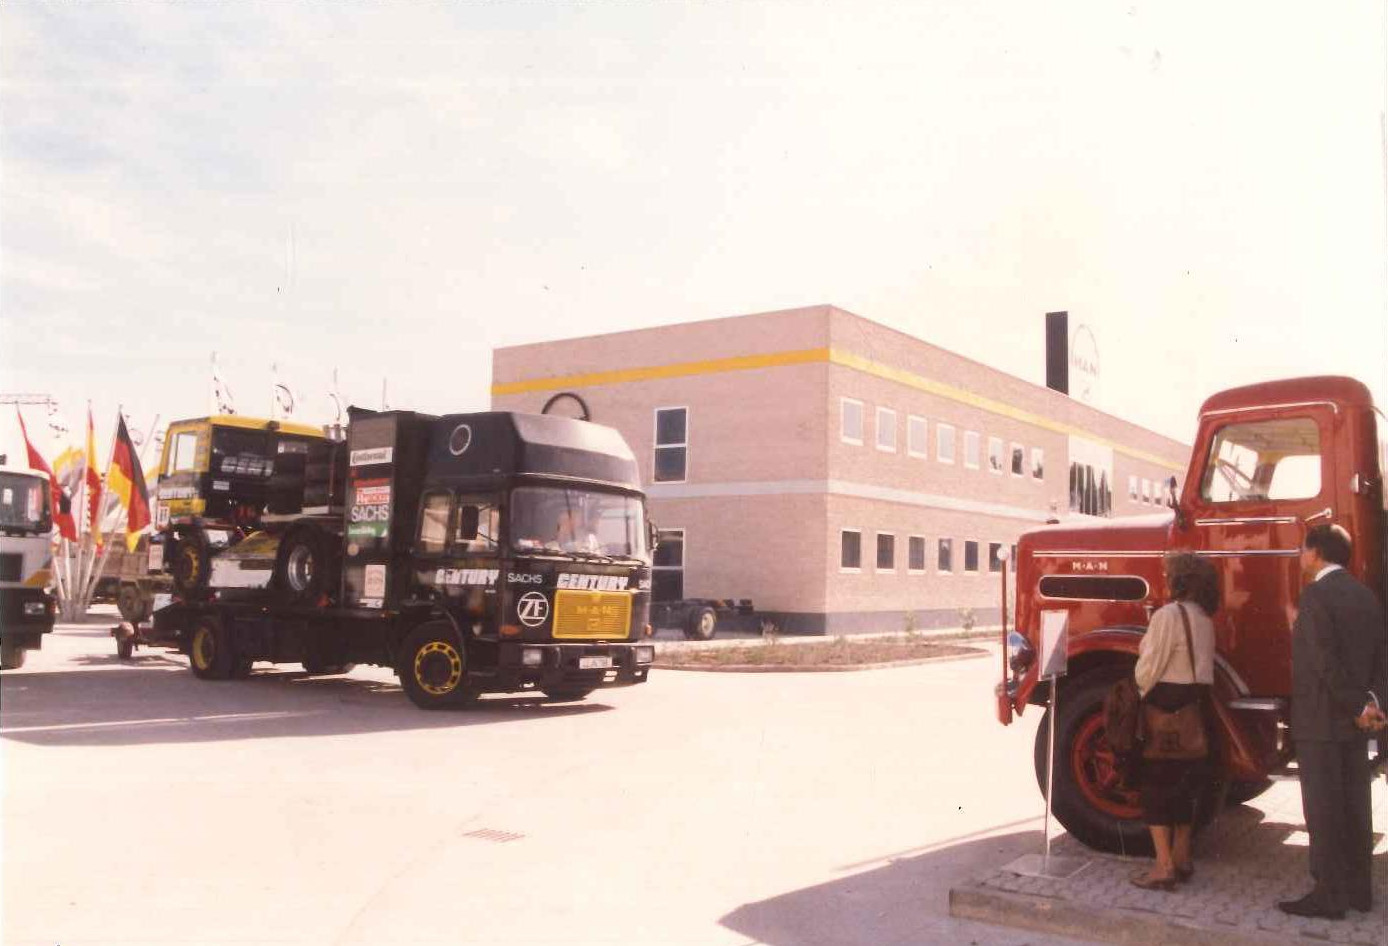 Llegada del equipo de comteición MAN en el Europeo de Carreras de Camiones a la sede de MAN en Coslada, años 80 del pasado siglo.